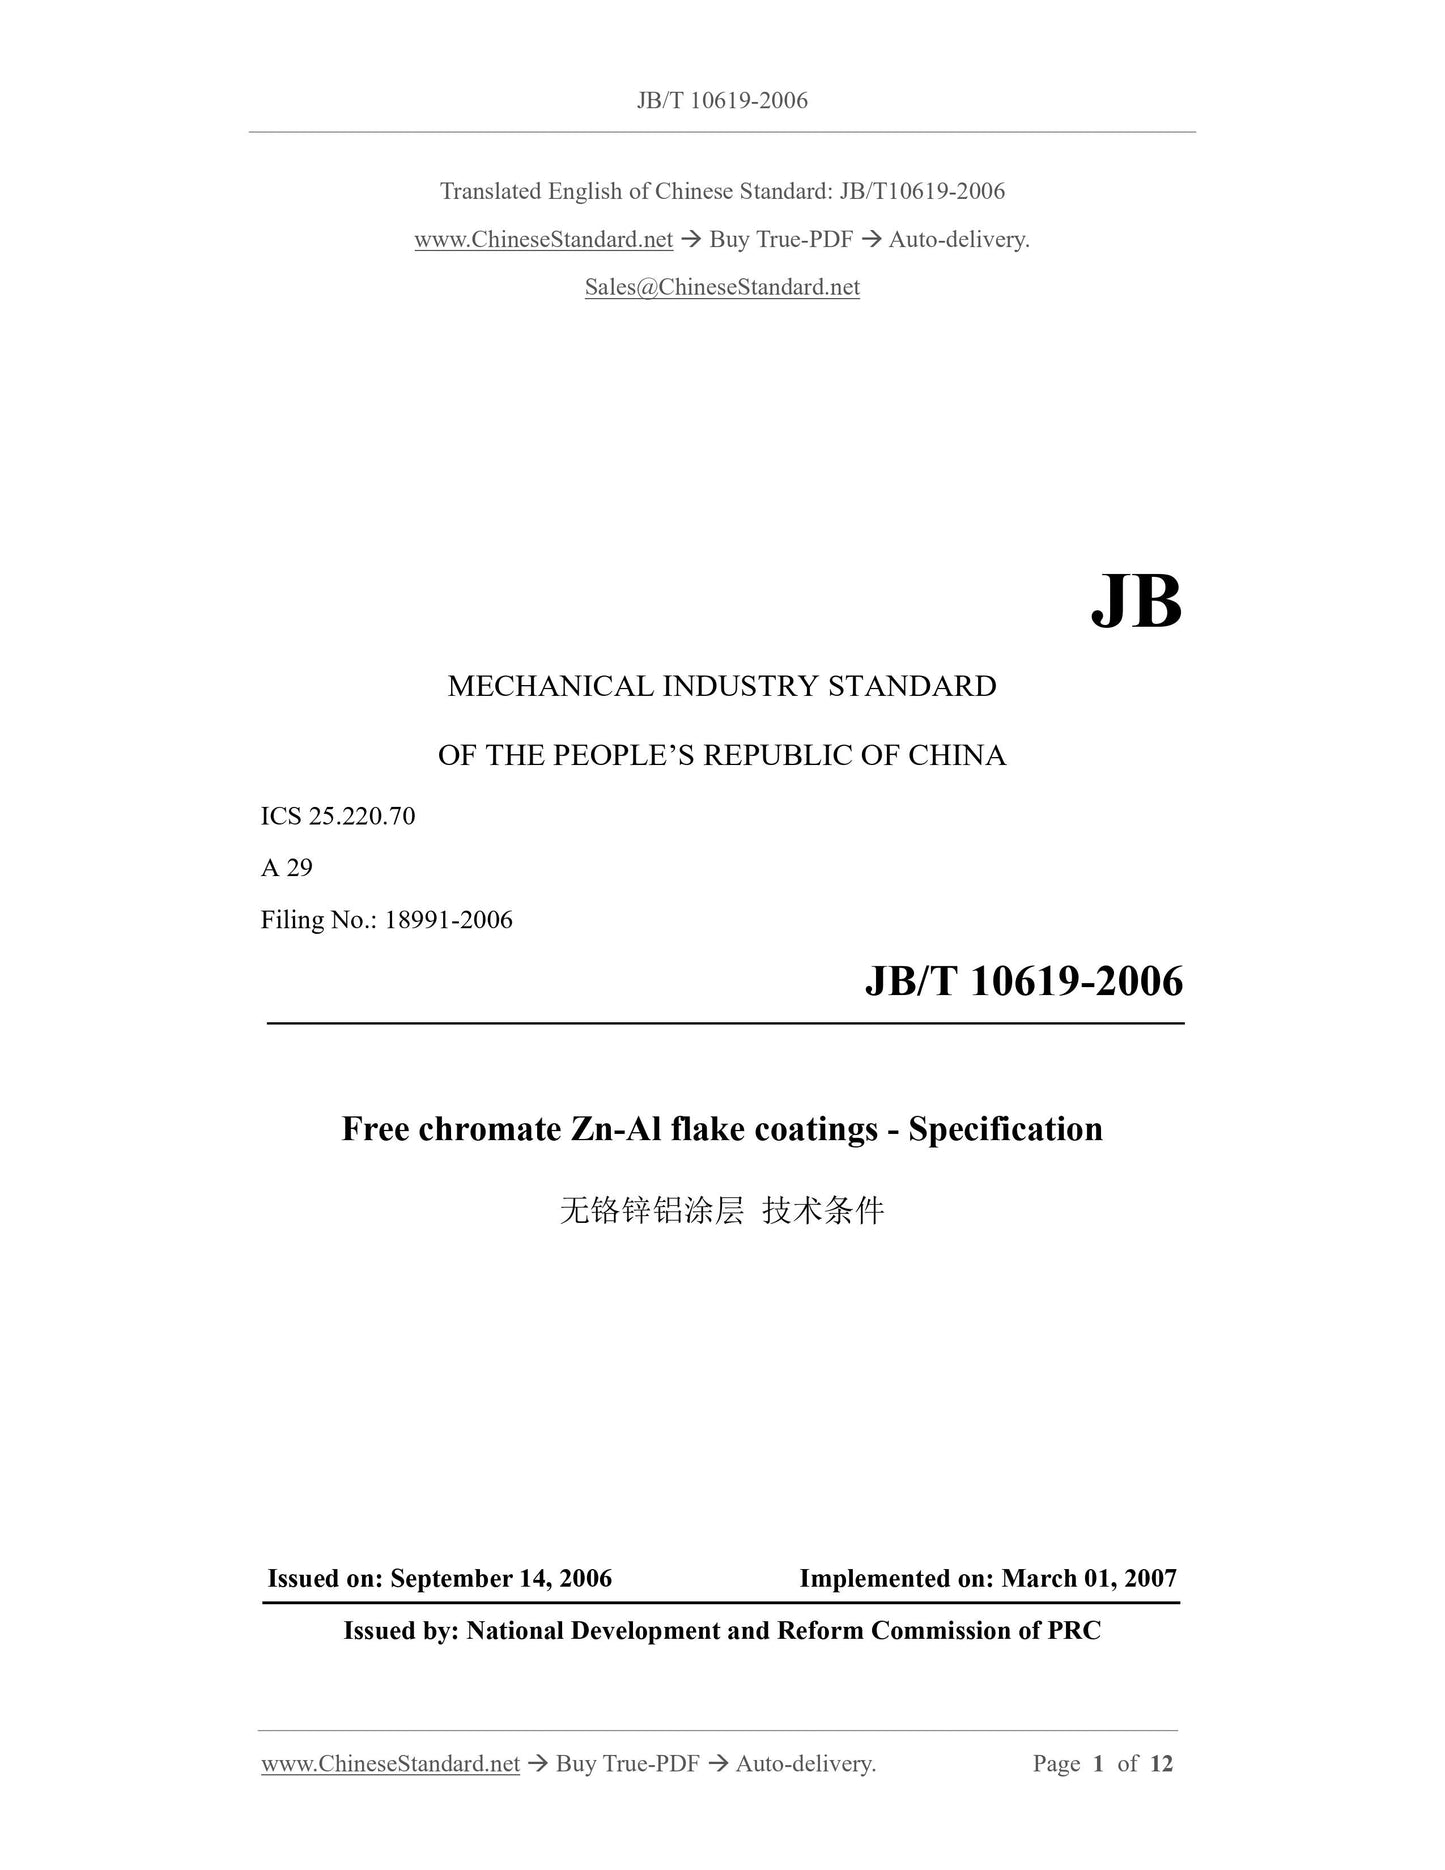 JB/T 10619-2006 Page 1